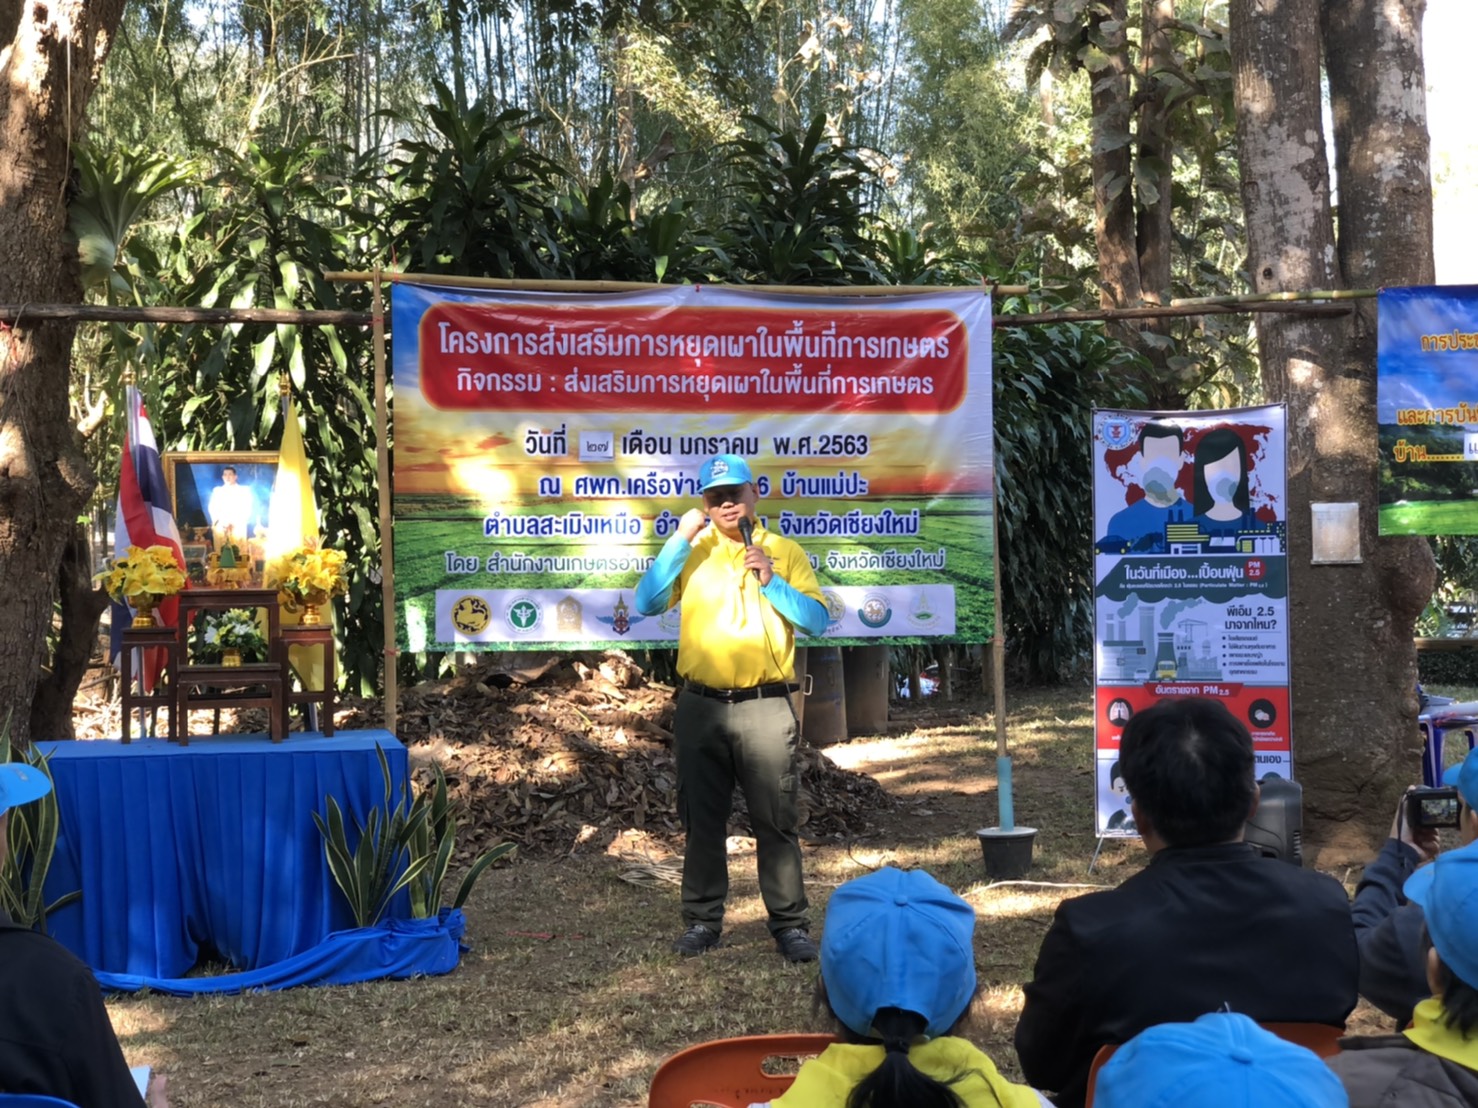 สภ.สะเมิง จ.เชียงใหม่ รณรงค์ประชาสัมพันธ์การป้องกันแก้ไขปัญหาหมอกควันไฟป่าและฝุ่นละอองขนาดเล็ก (PM 2.5)  ณ บ้านปาลาน ต.สะเมิงเหนือ อ.สะเมิง จ.เชียงใหม่